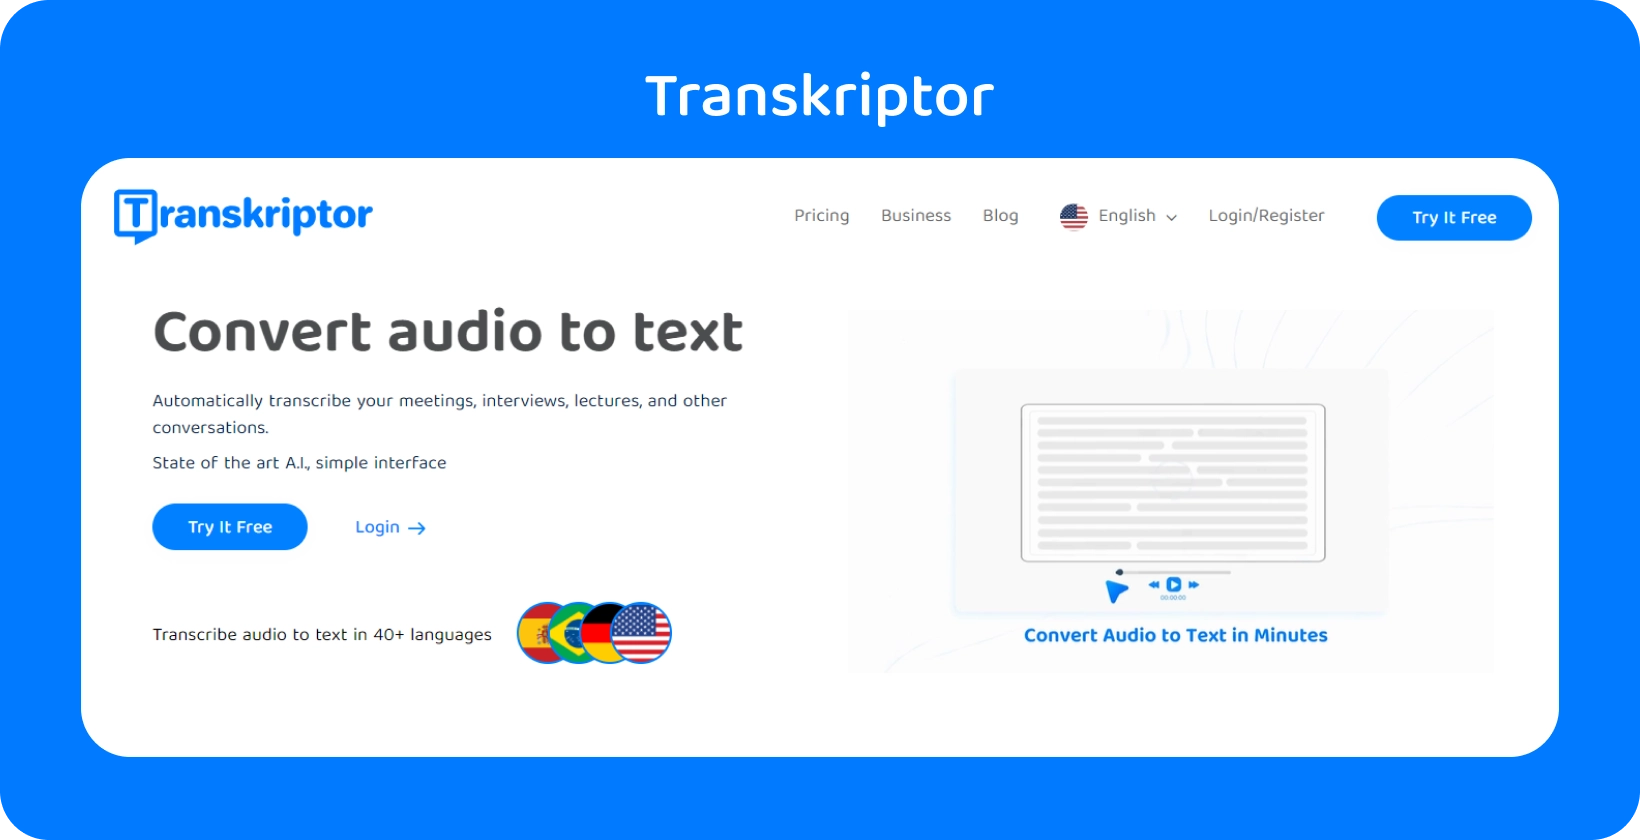 Transkriptor's grænseflade viser lydkonvertering til tekst og understøtter over 40 sprog til forskellige filformater.
